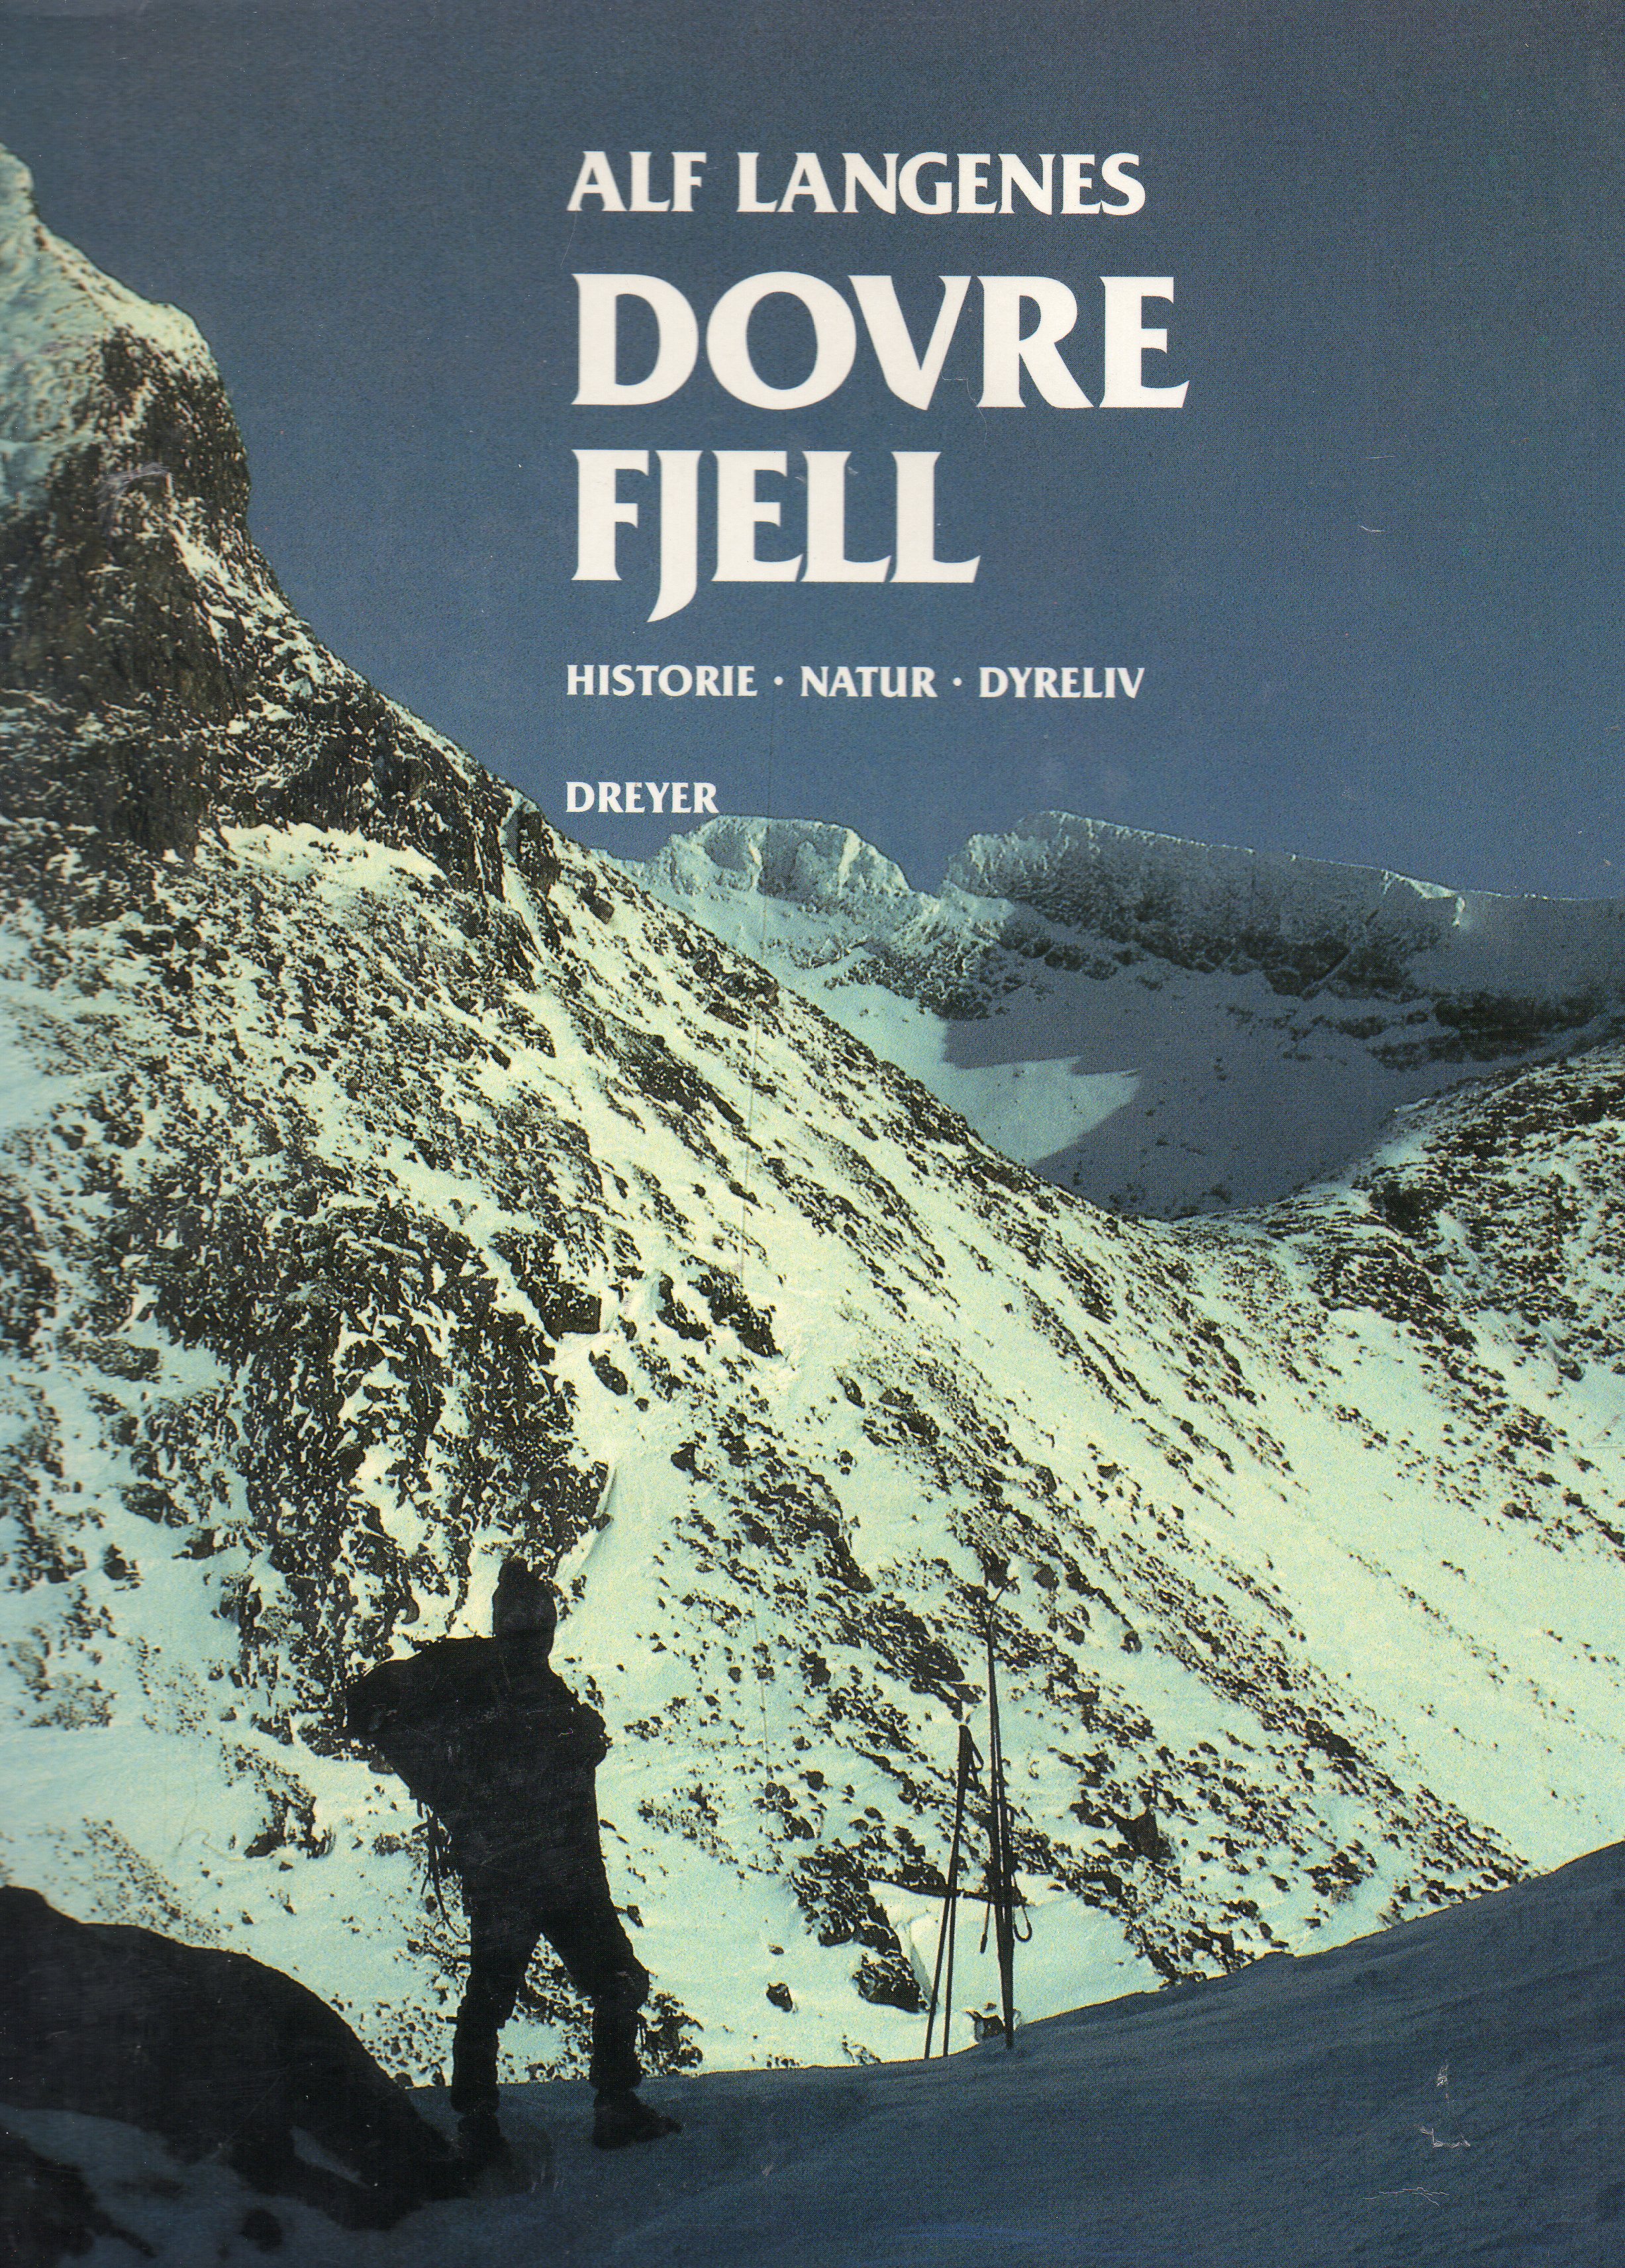 Dovre Fjell Historie Natur Dyreliv Alf Langenes Dreyer  smussbind 1988 pen